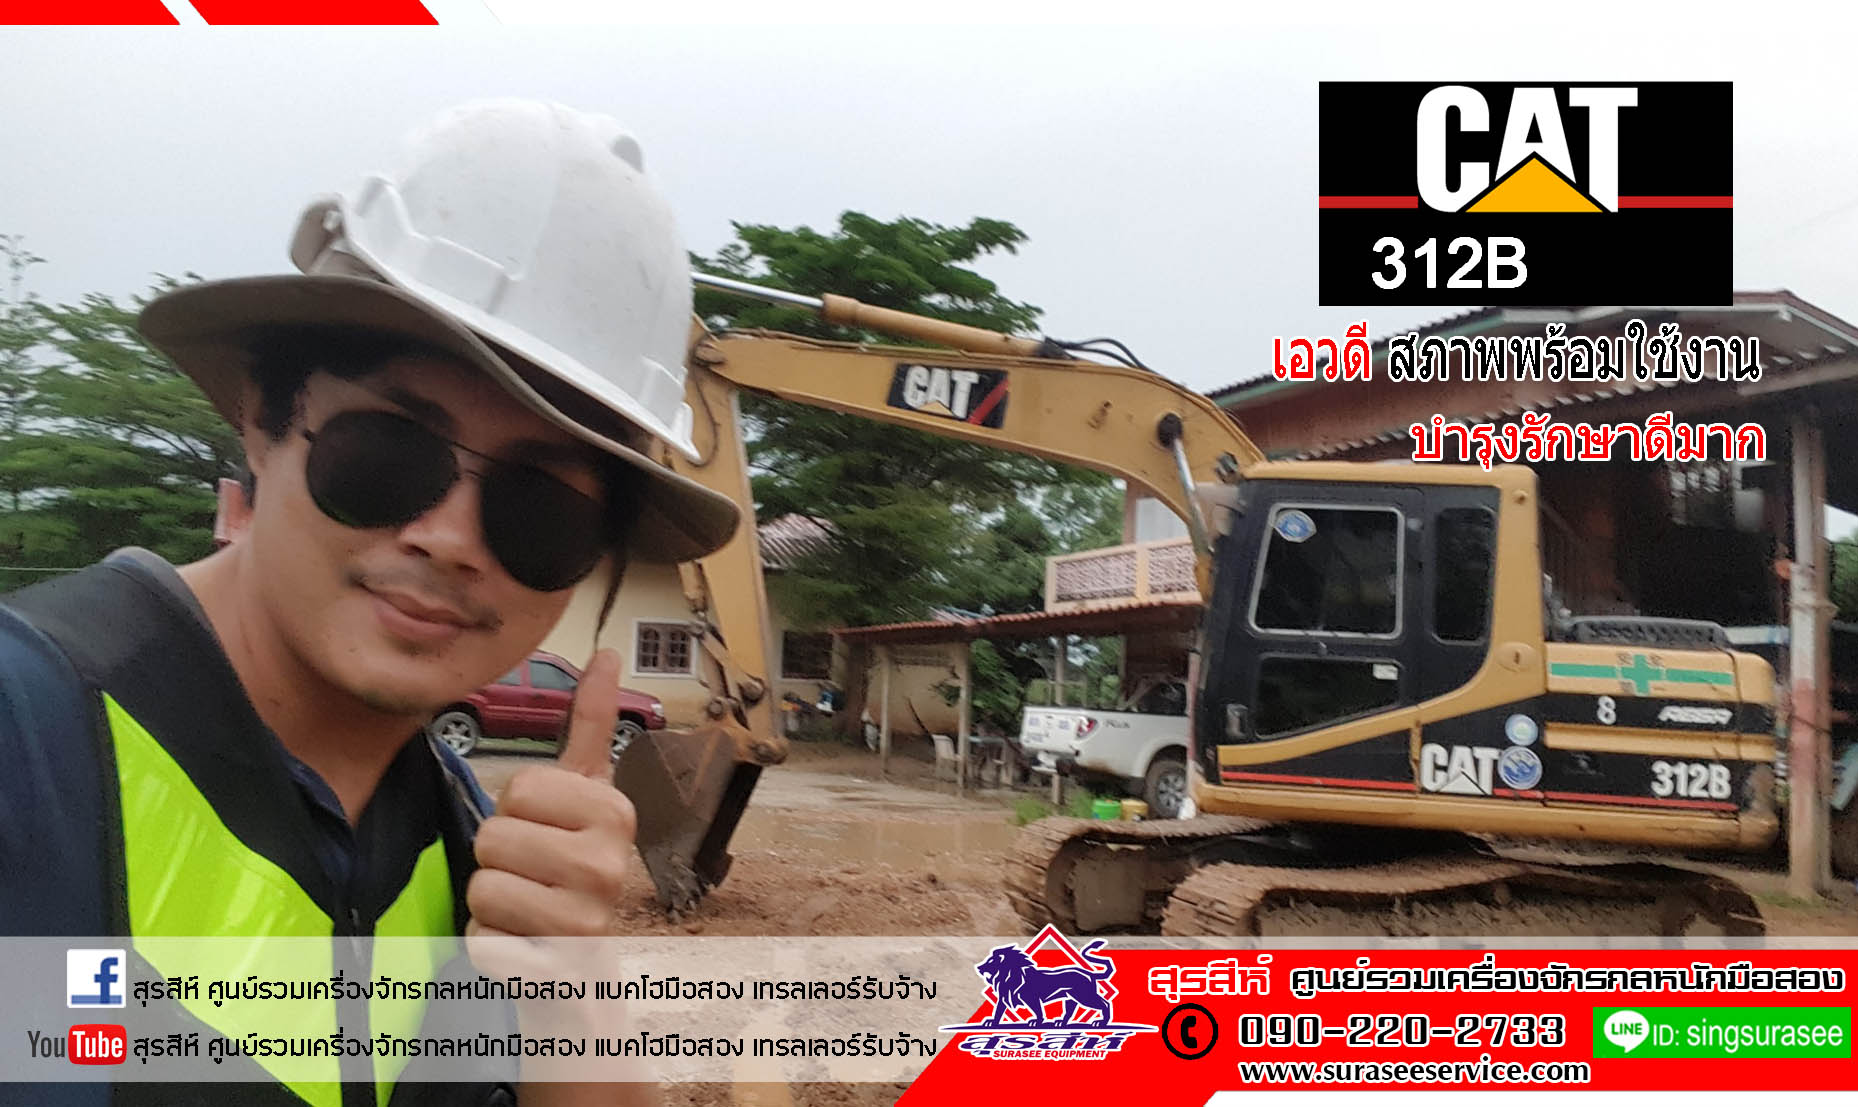 รถแบคโฮ รถแมคโค CAT312B เก่าไทย สภาพพร้อมใช้งาน 